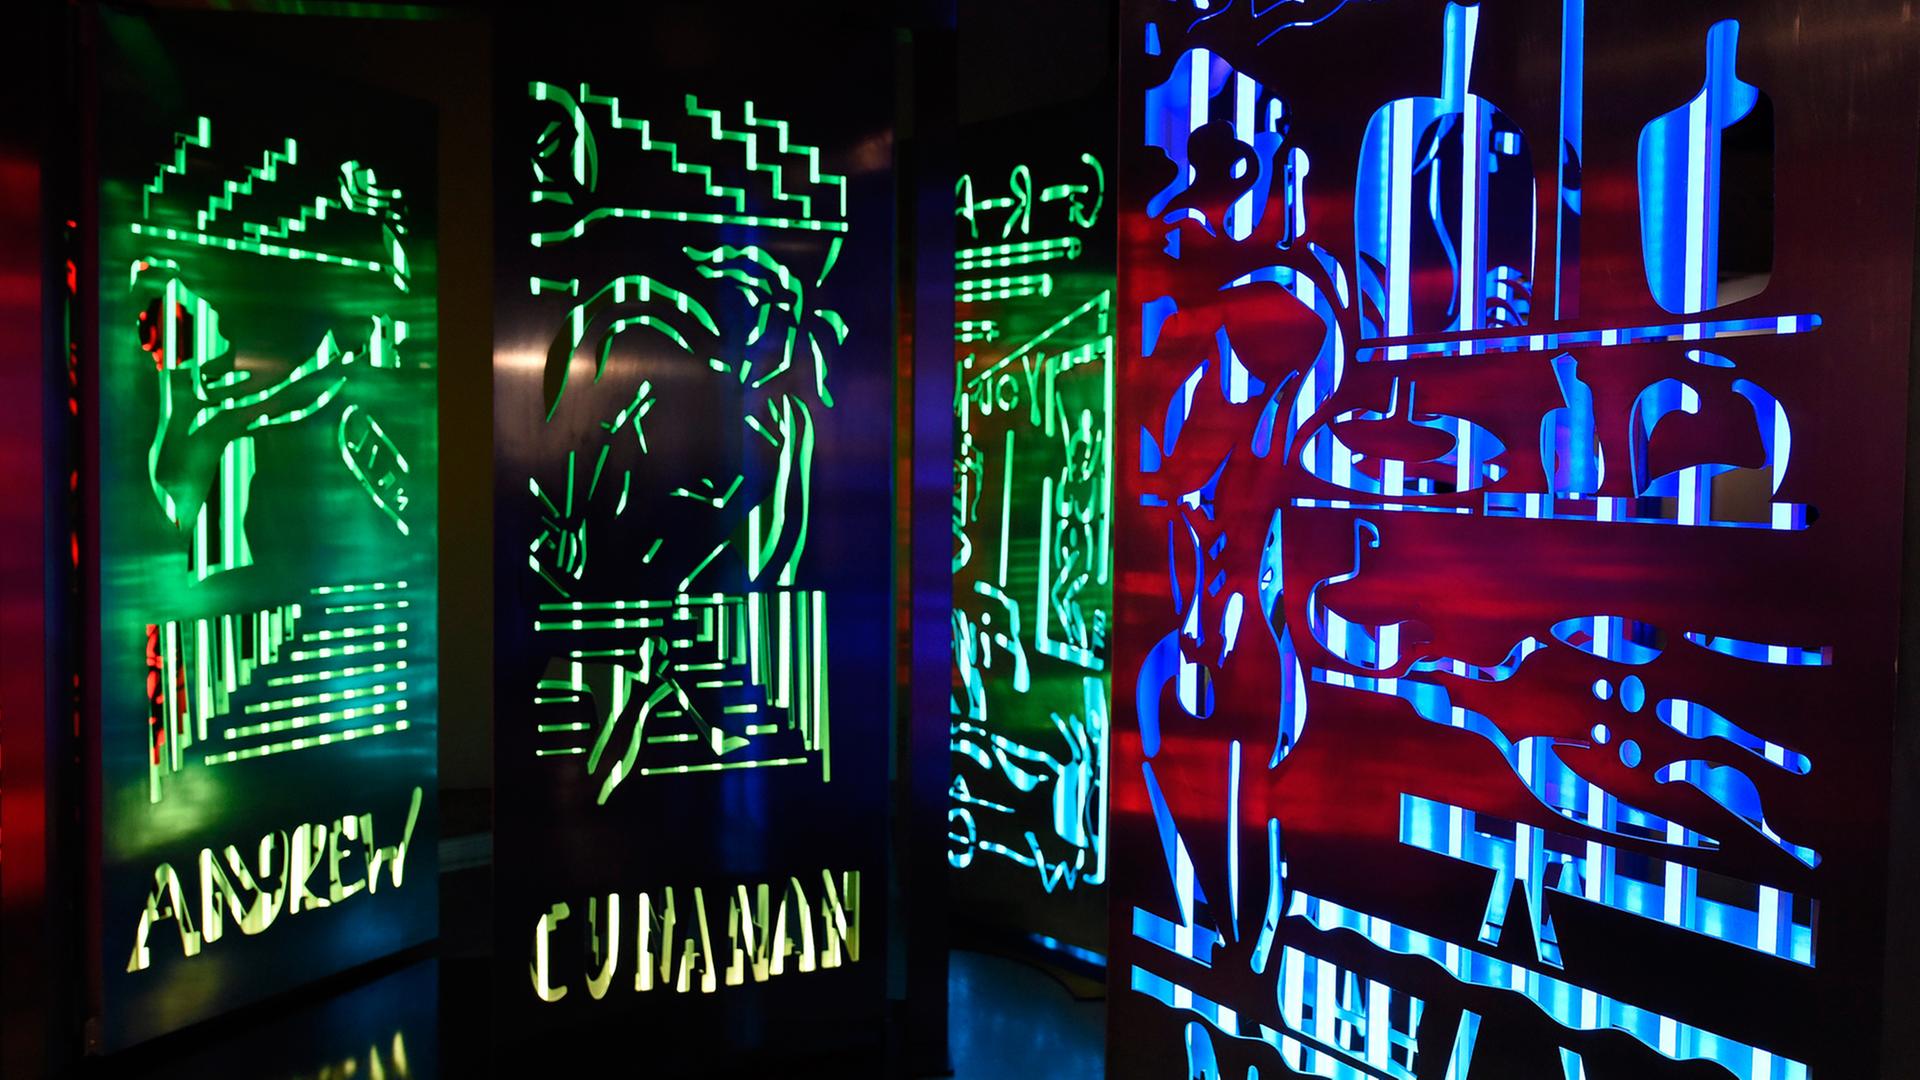 Neon-Kunstwerke von der Villa Design Group in der Mathew Gallery, ausgestellt während der Art Basel Miami Beach 2015 in Florida.